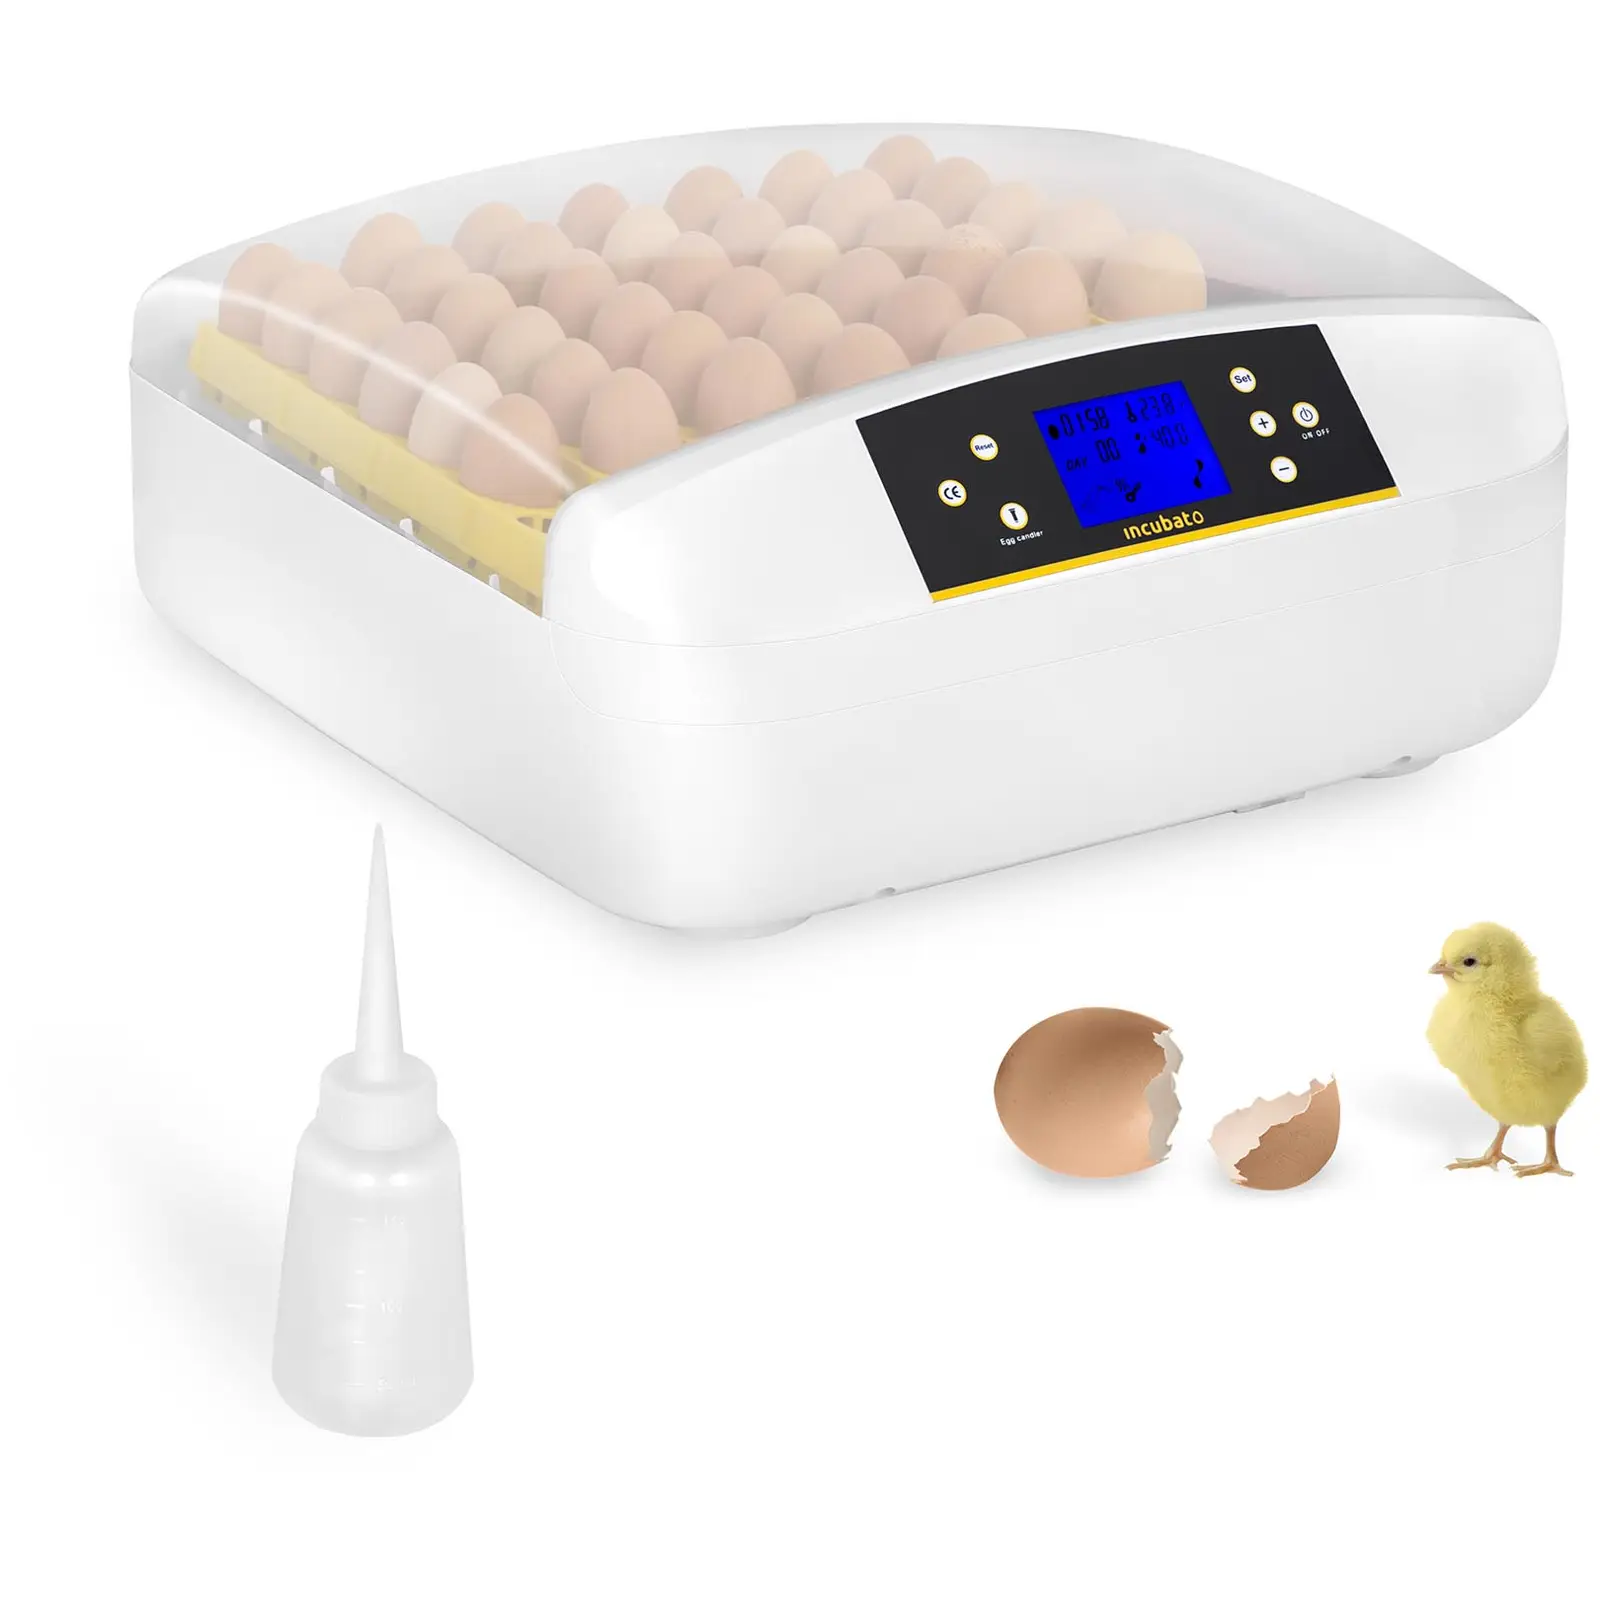 Incubatrice per uova professionale - 56 uova - Distributore d’acqua incluso - Completamente automatica